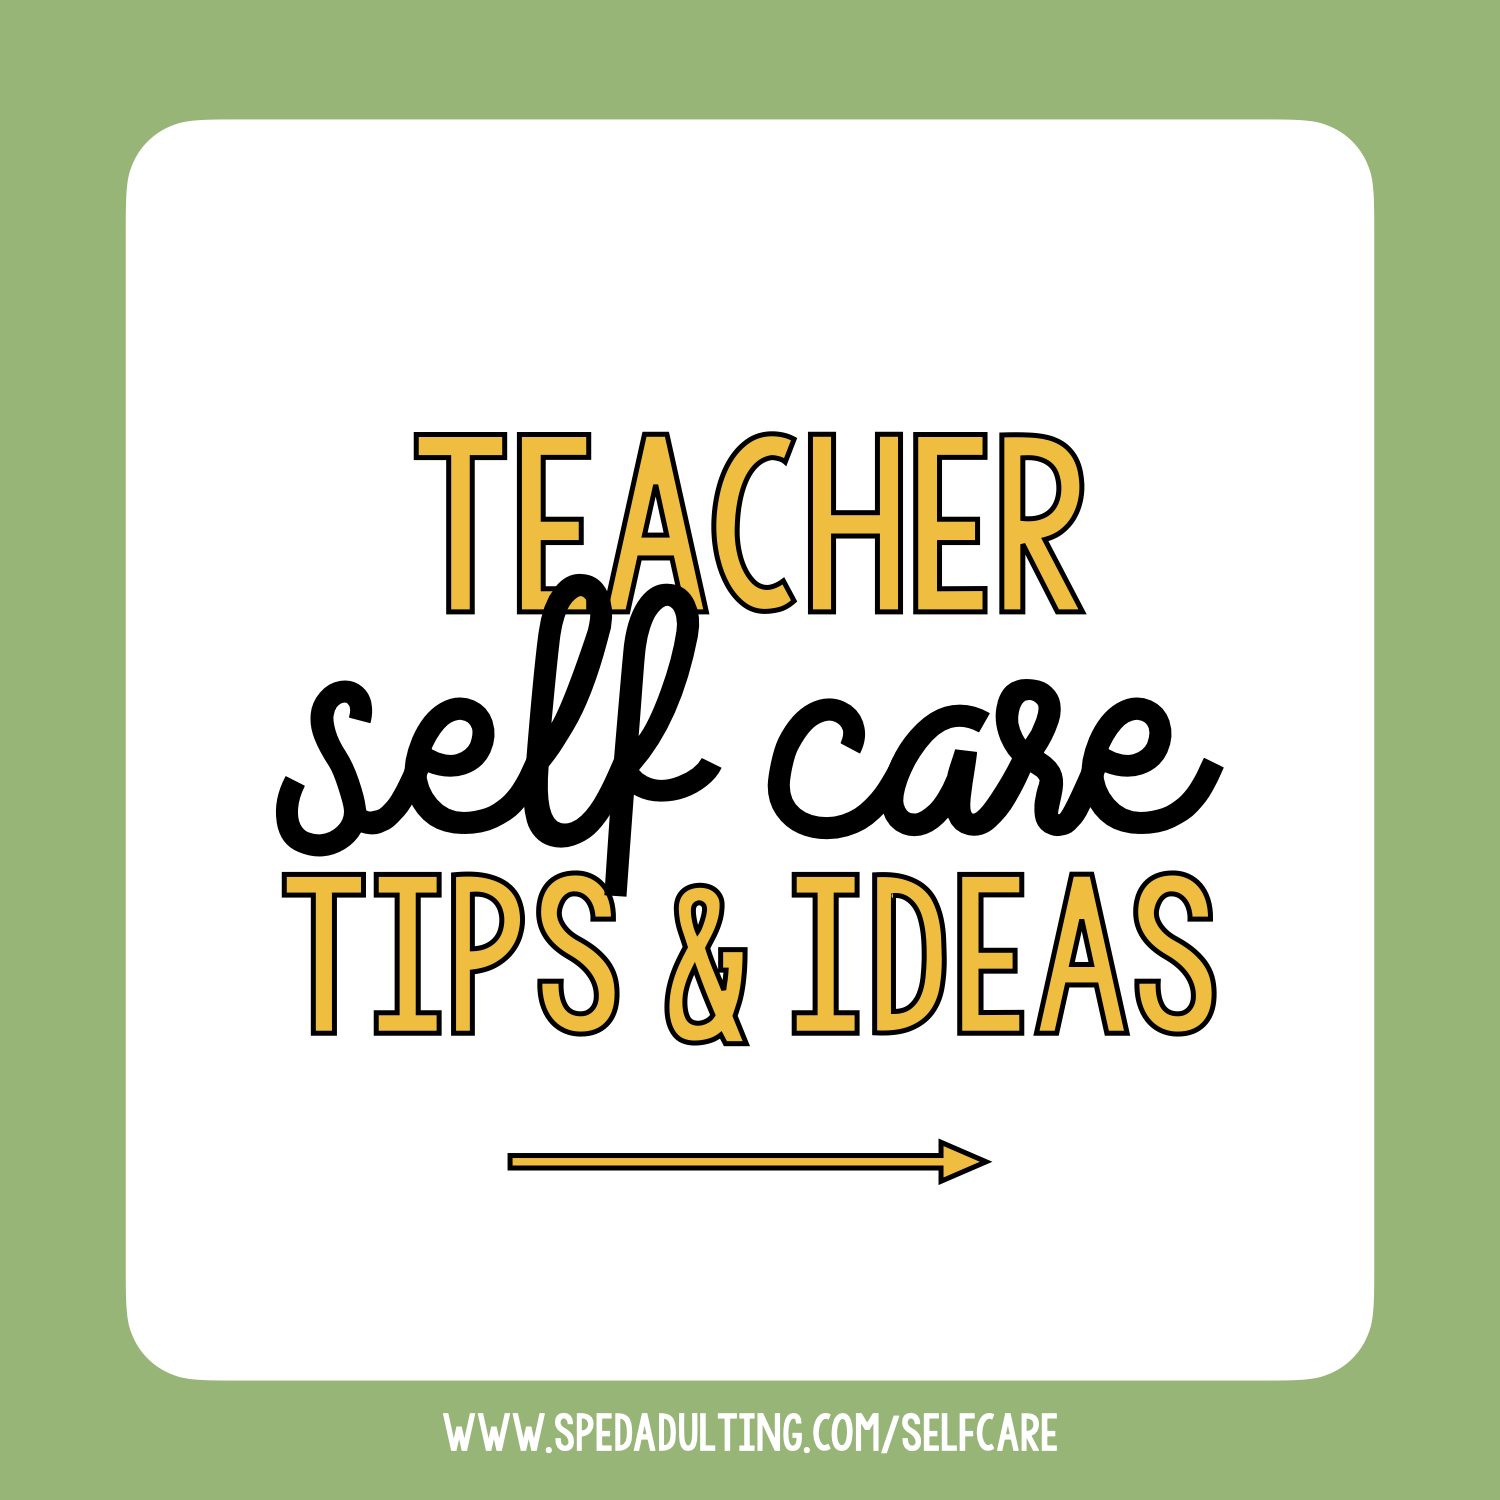 BLOG: Teacher self-care tips & ideas